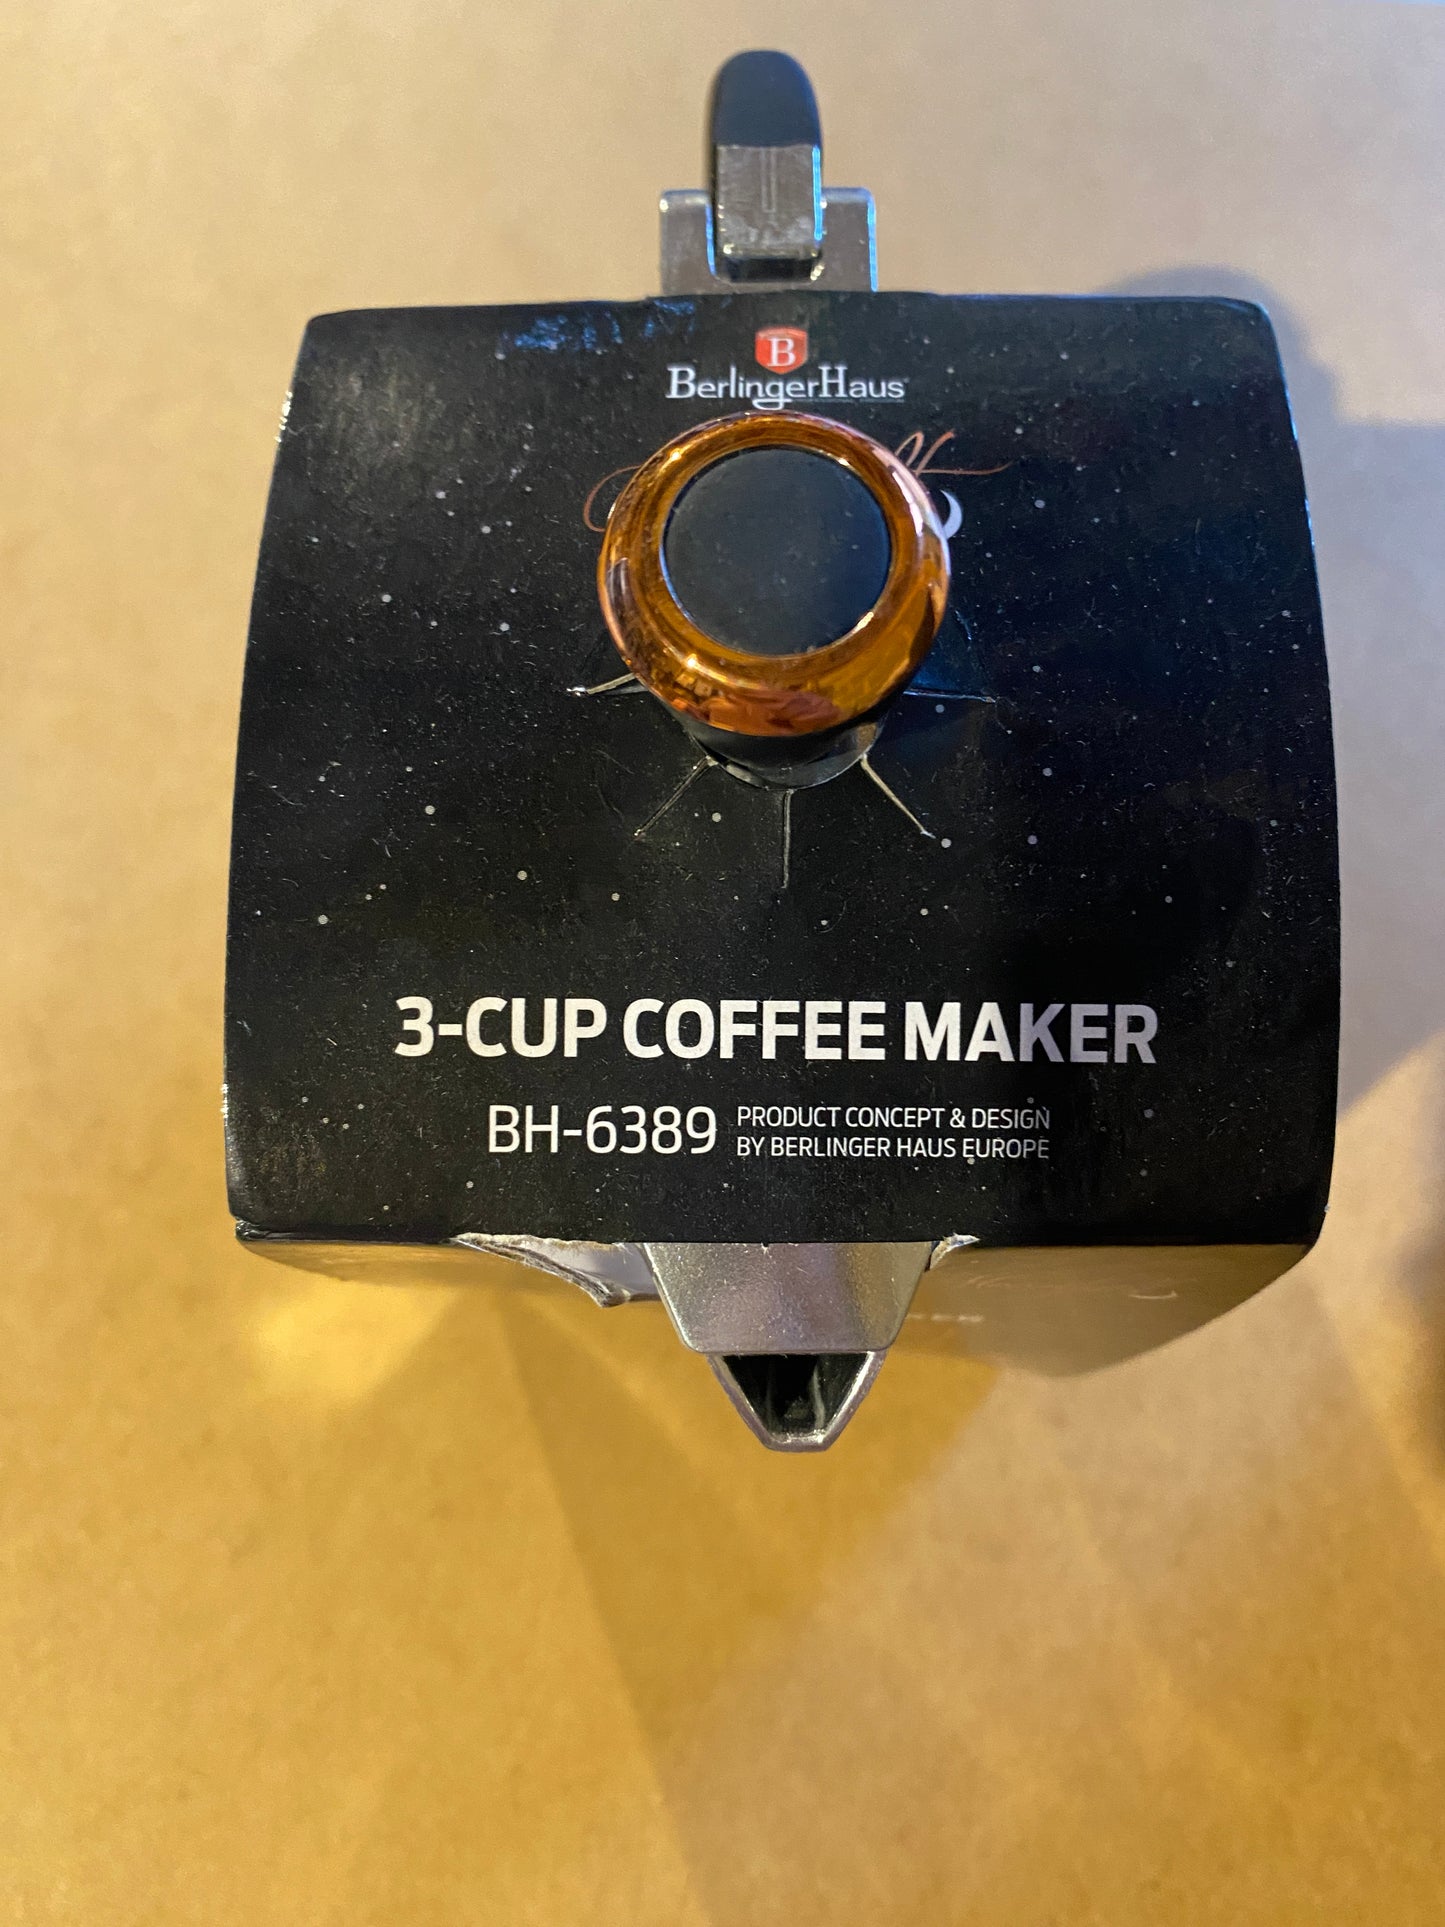 3-Cup coffee maker Berlinger Haus